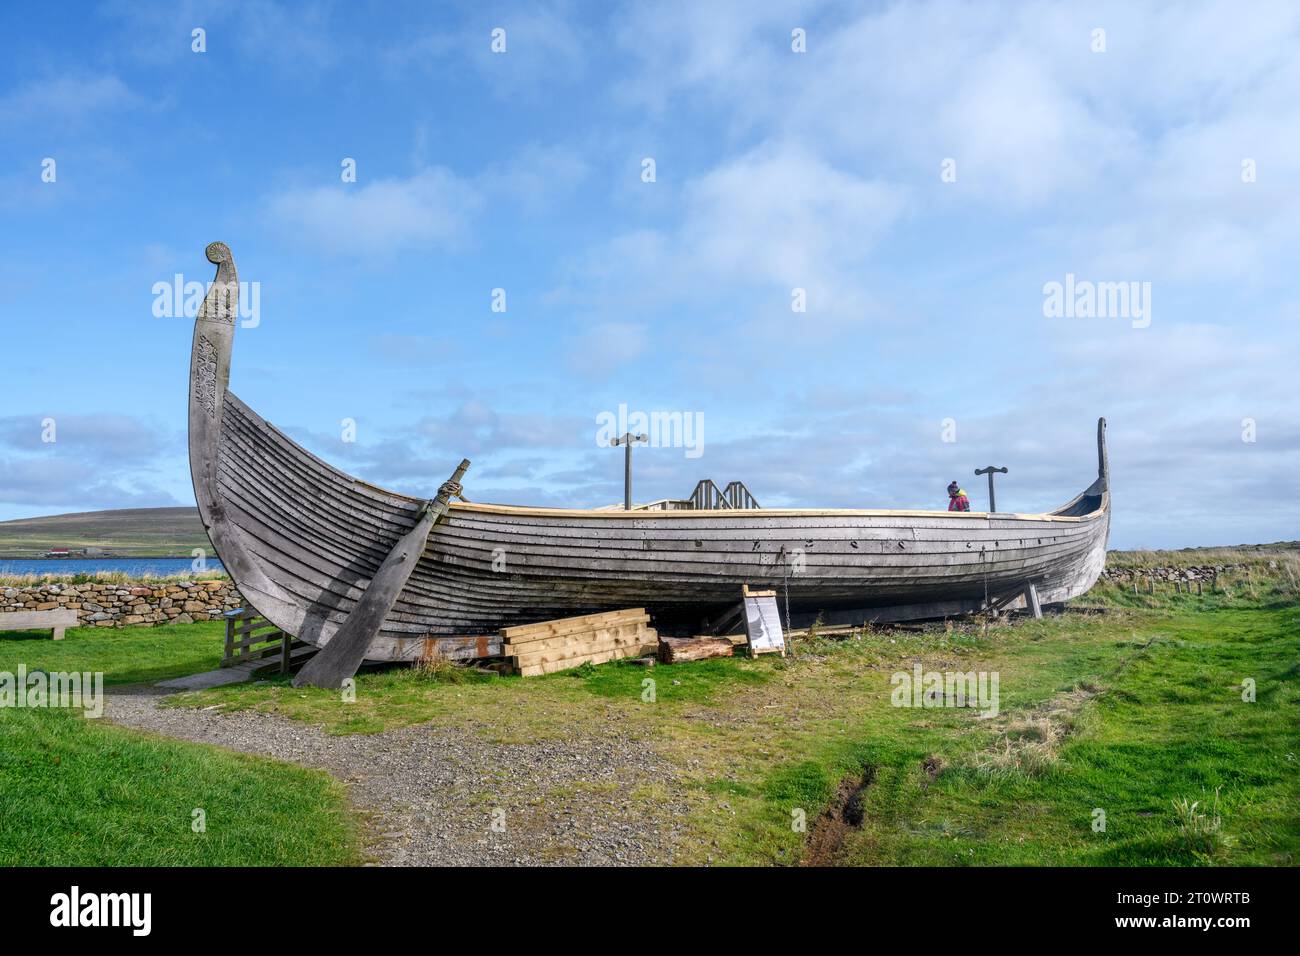 Réplique du navire viking 'Skidbladner' à Haroldswick, Unst, Shetland, Écosse, Royaume-Uni Banque D'Images